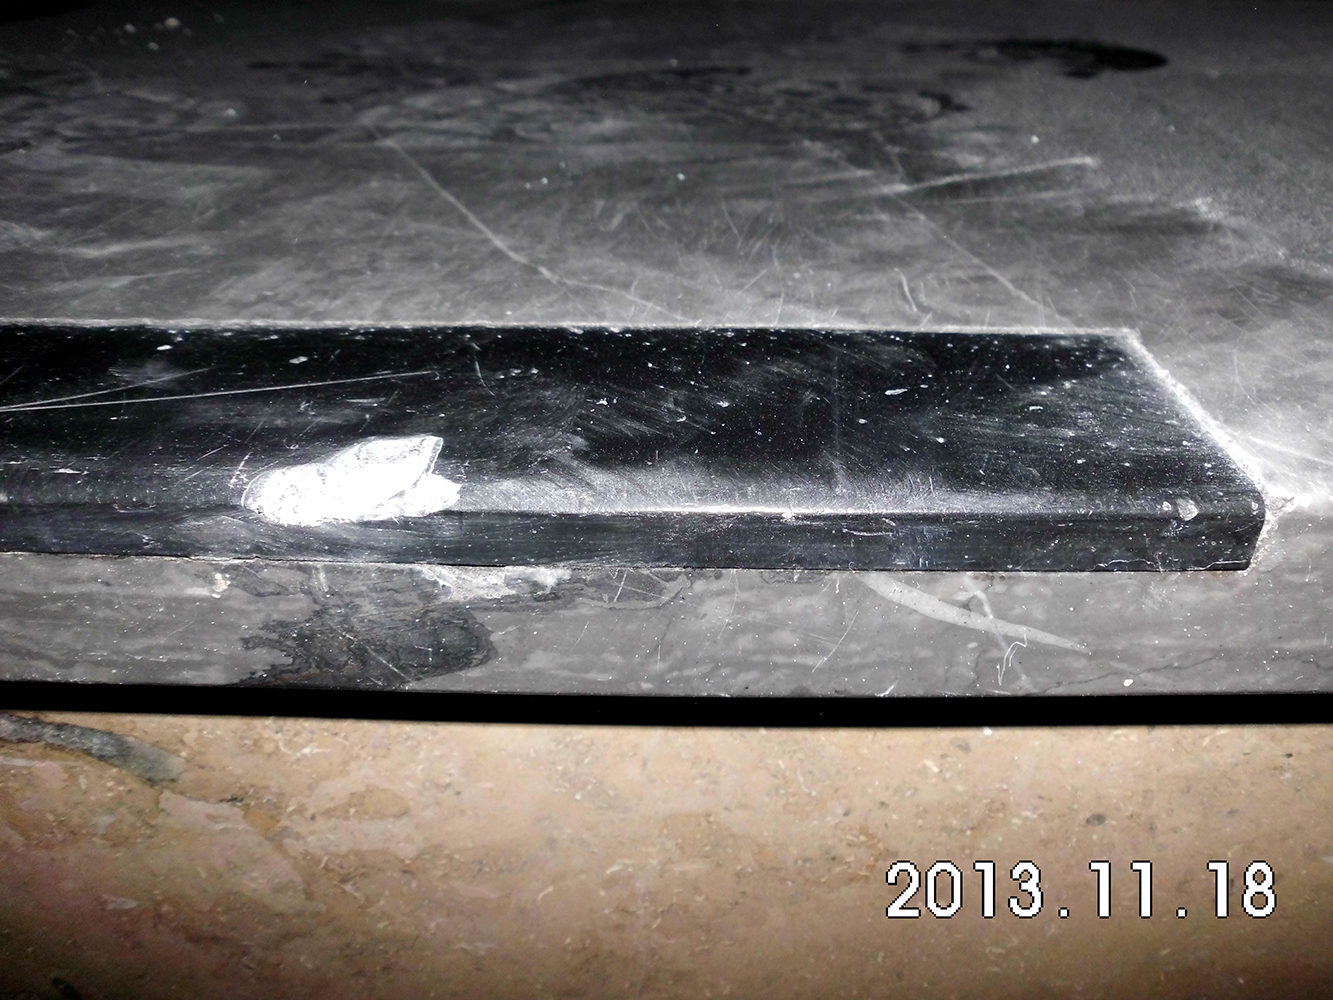 Bild: Tekoschienen, PVC Trittsicherheitskante, Reparaturkante 511 oder Olbrich 310 vor dem Austausch durch Naturstein Biermann